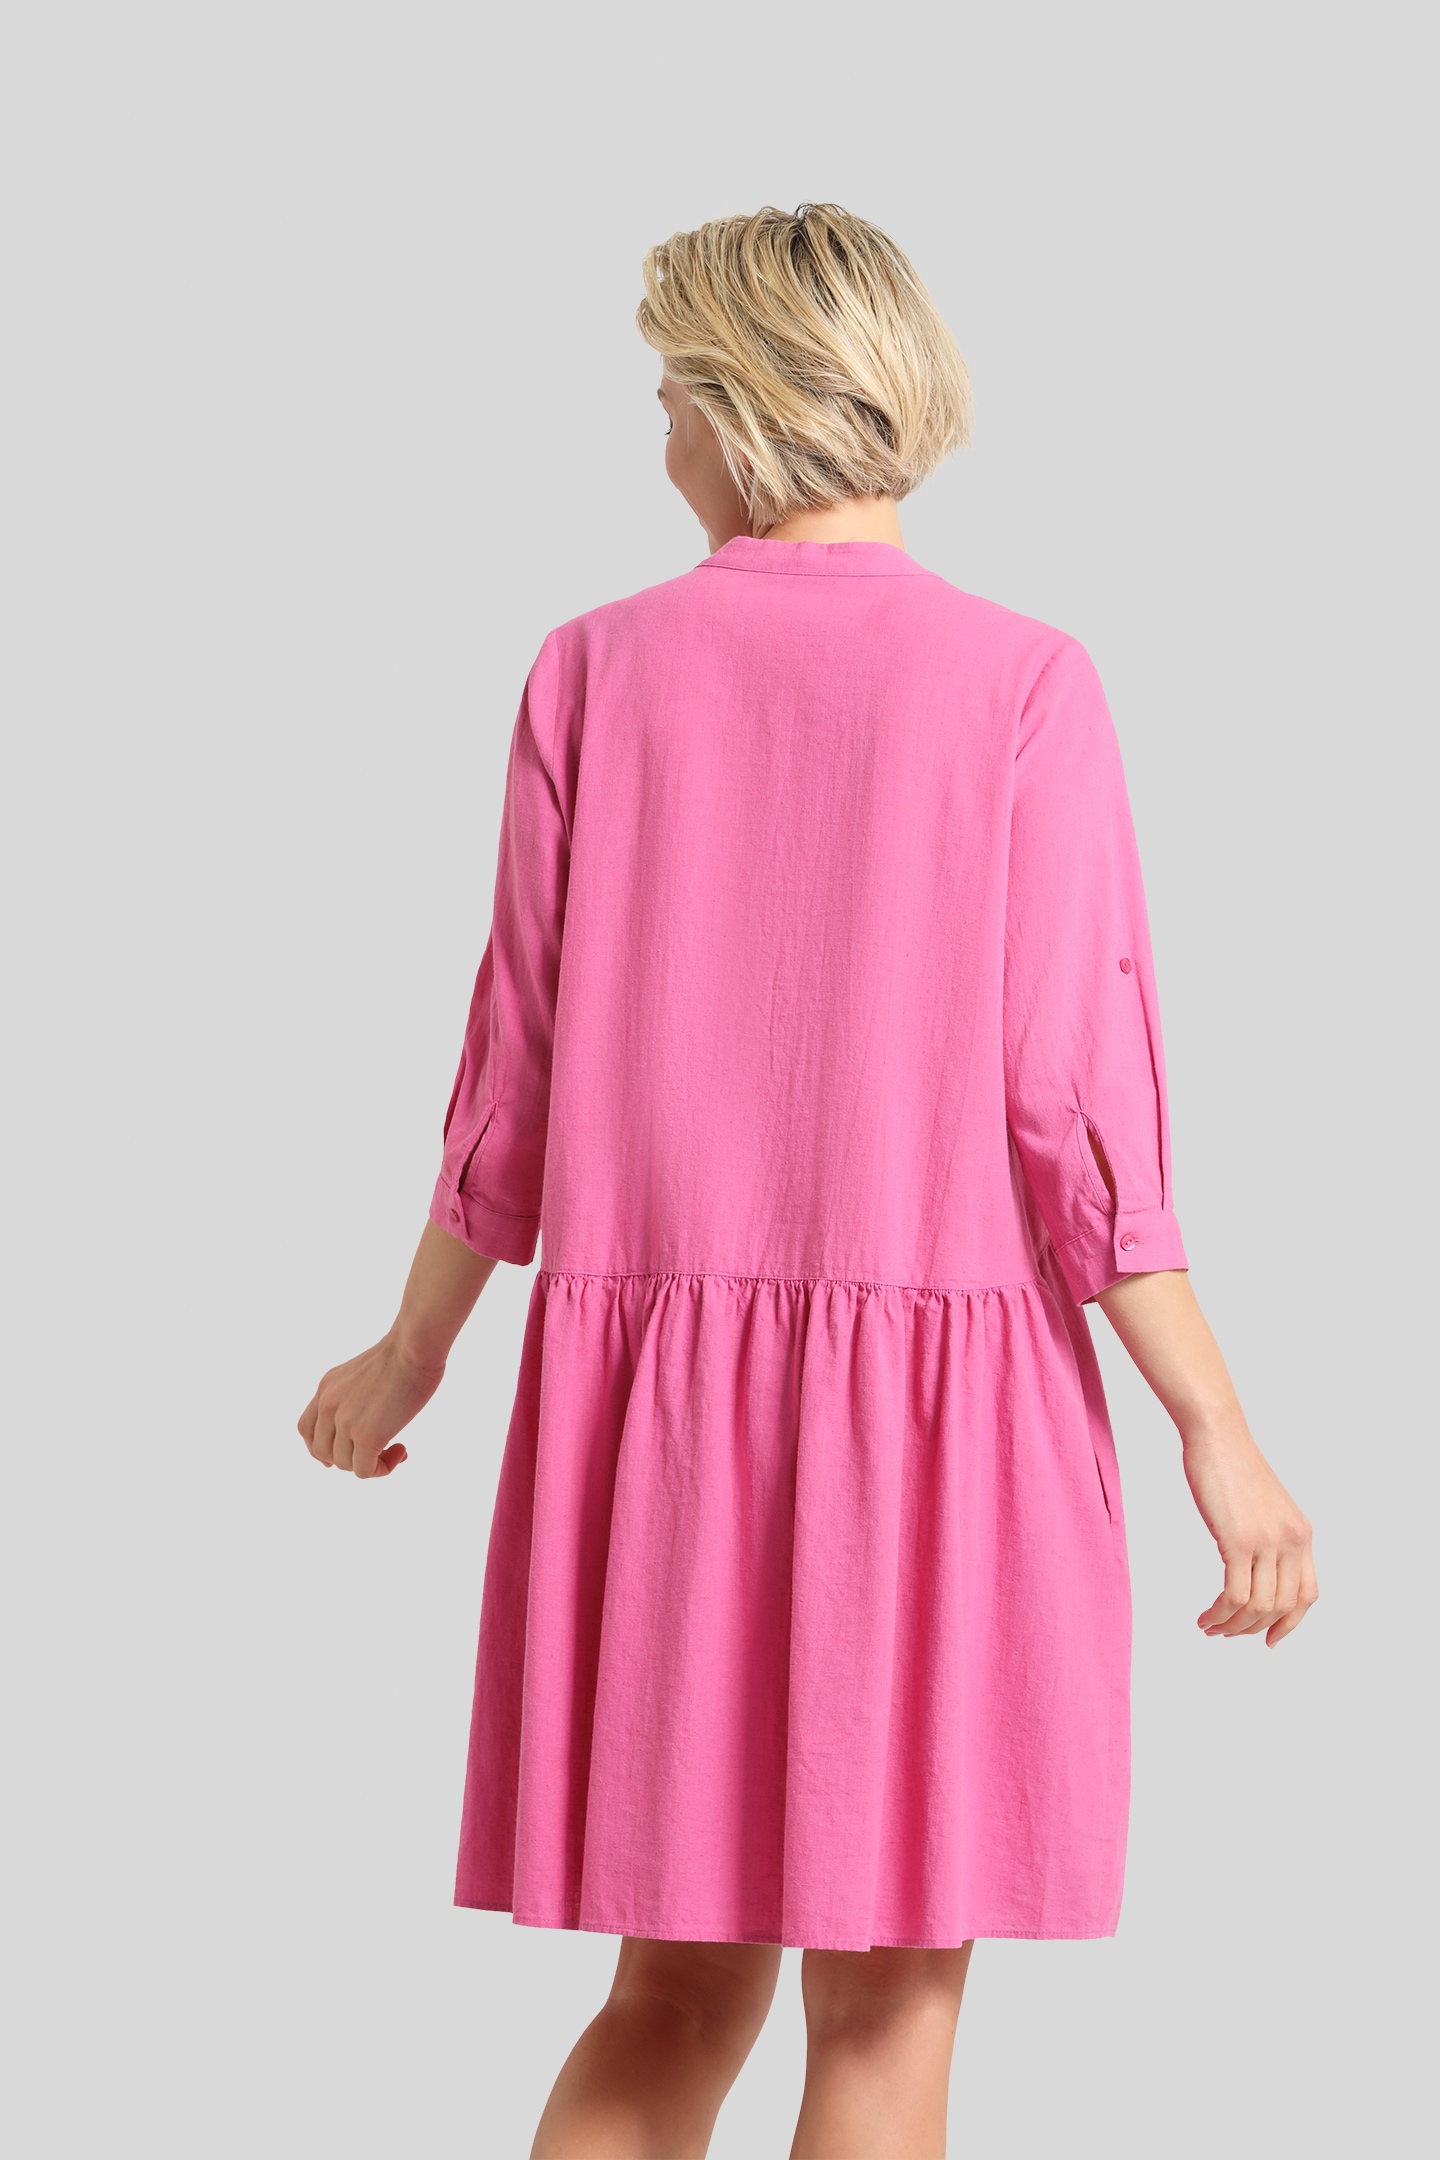 einem Sommerkleid, BAUR kaufen | aus Bauwoll-Leinen-Mix bugatti für